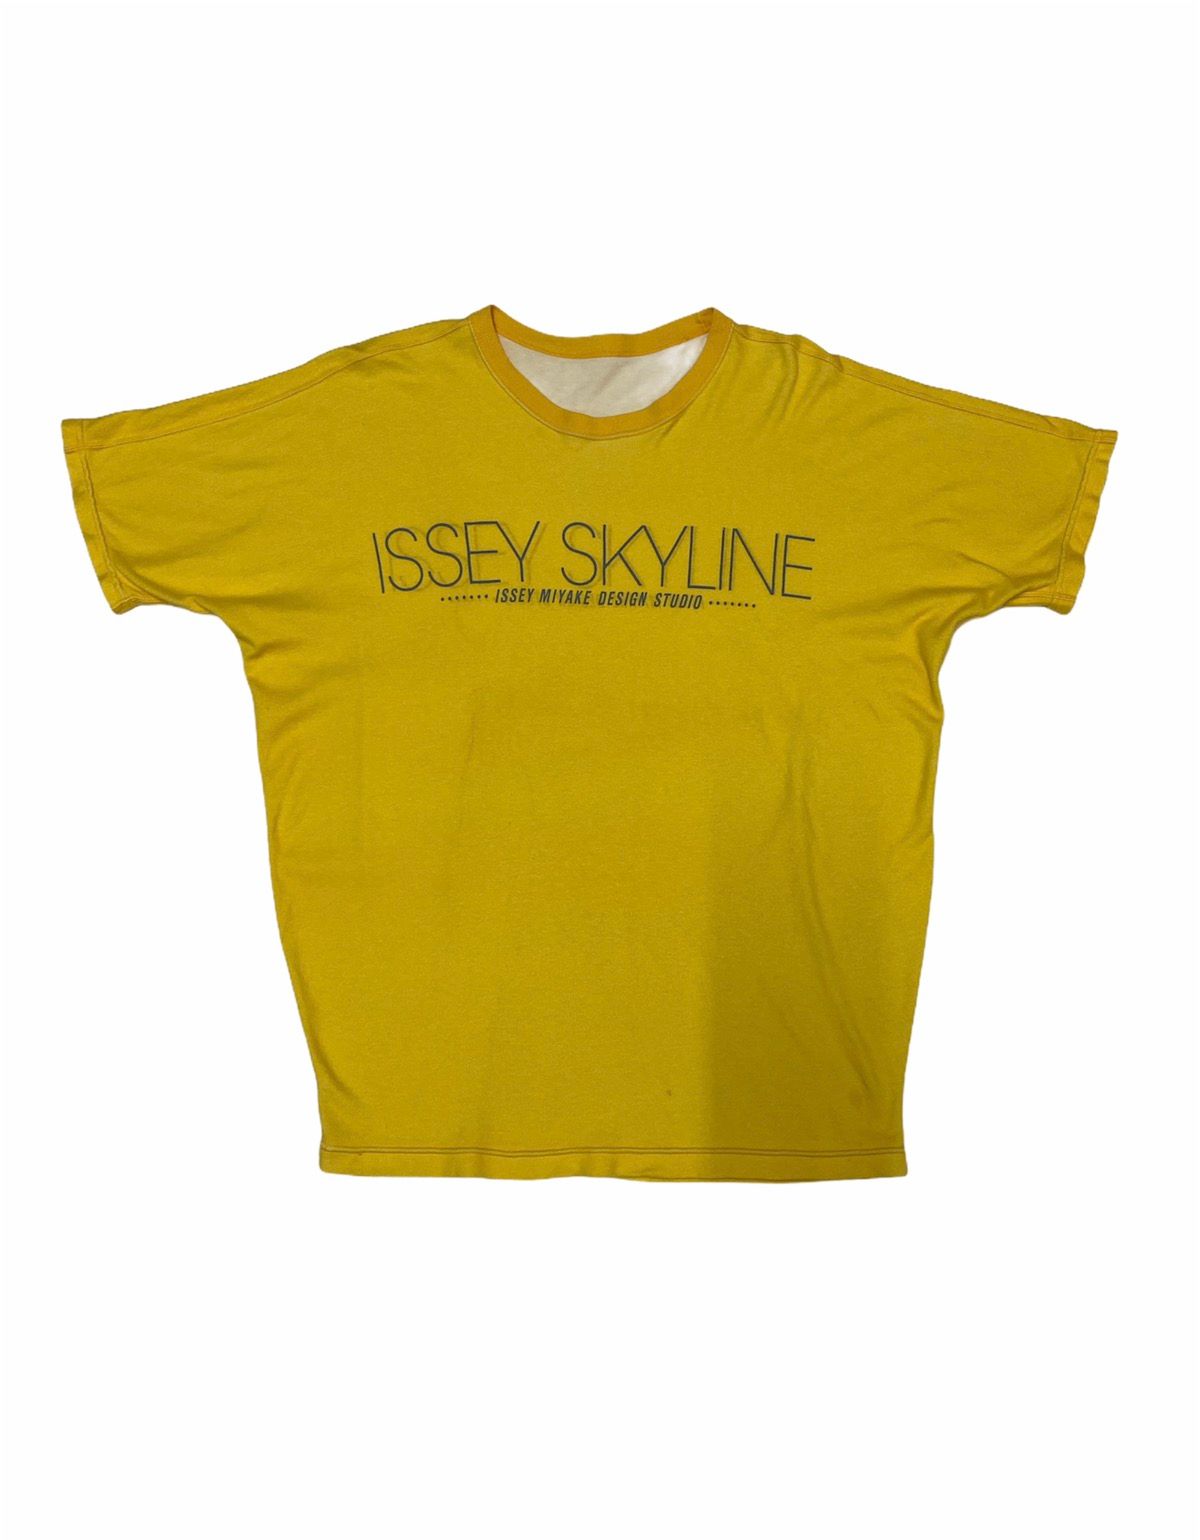 Pre-owned Issey Miyake X Tsumori Chisato Reversibleissey Miyake Skyline Design Studio Tee Shirt In Yellow